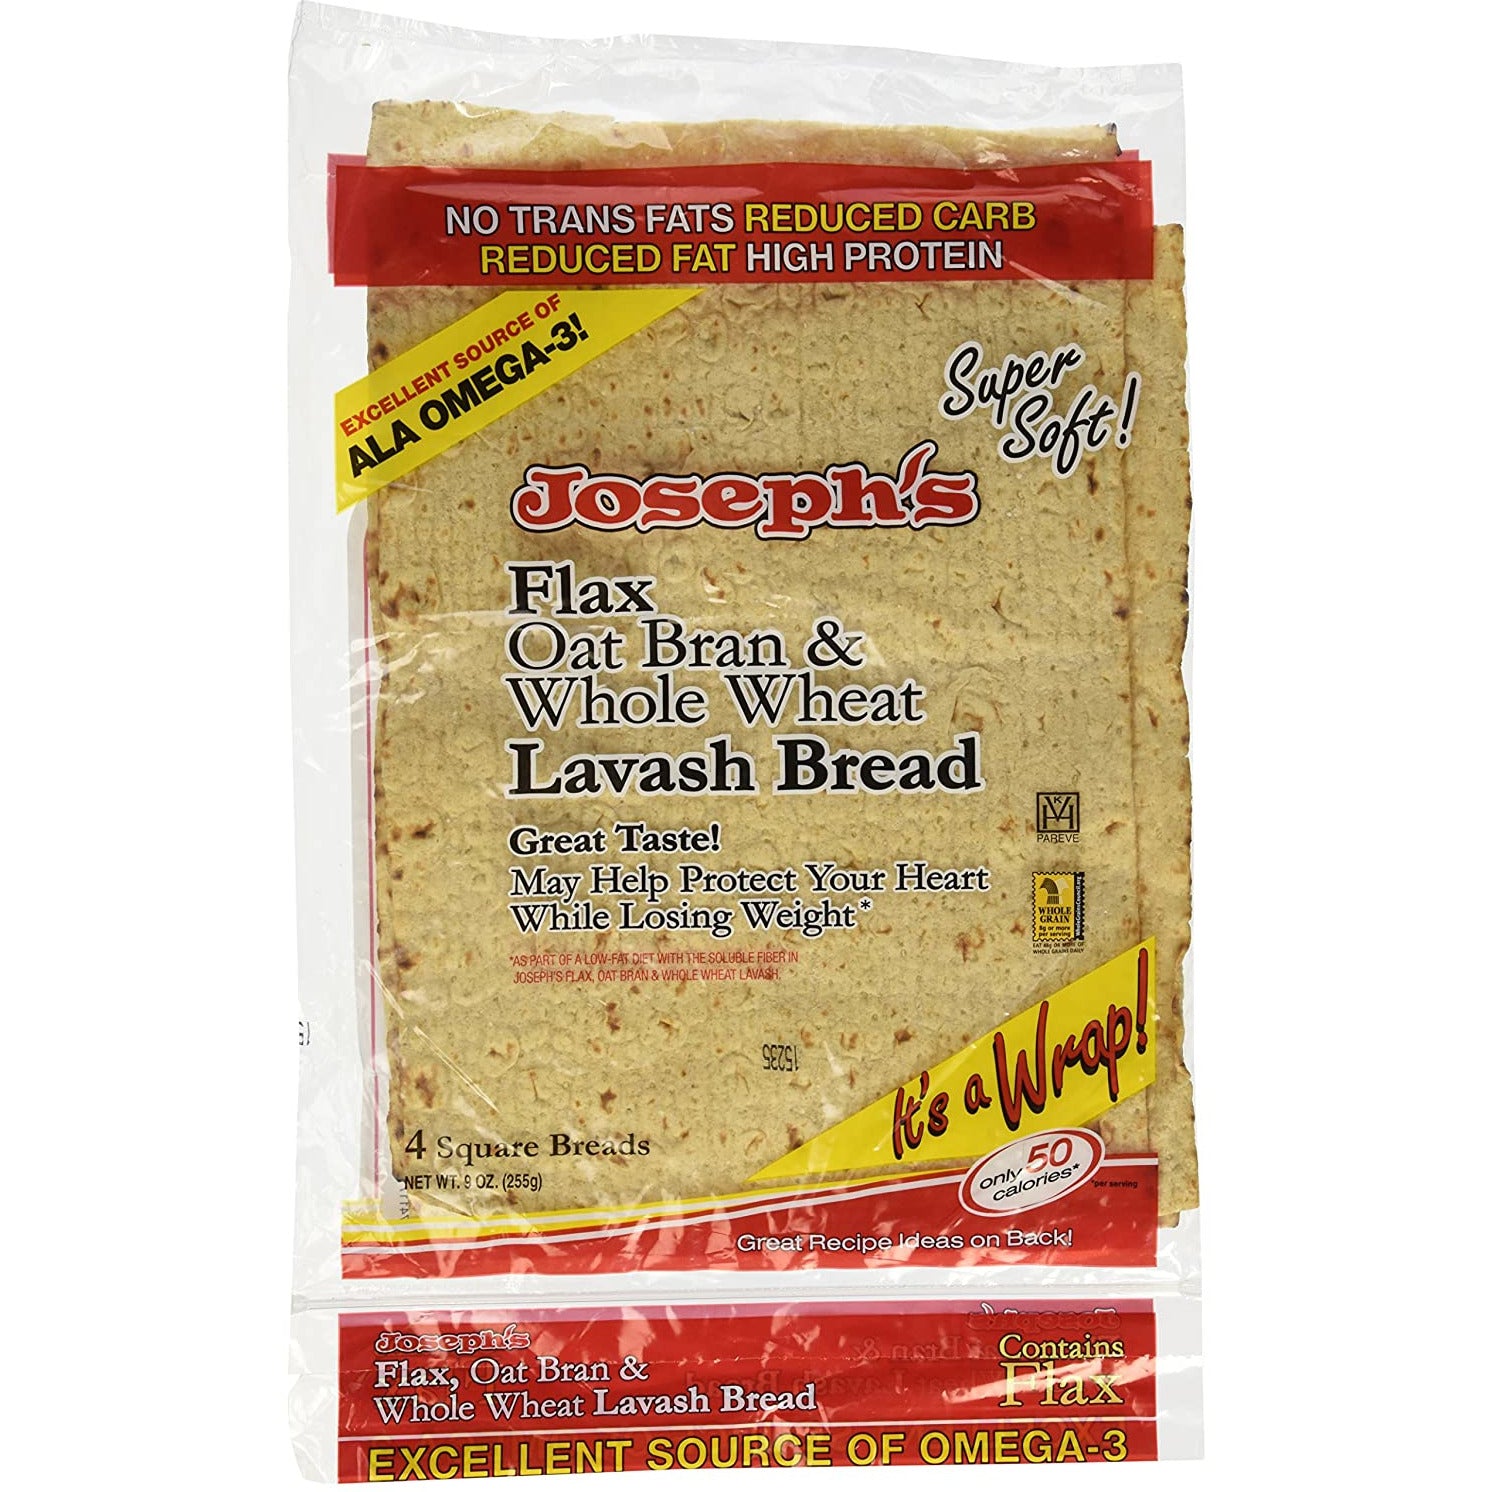 Joseph's Flax, Oat Bran & Whole Wheat Lavash Bread, 8 ct.